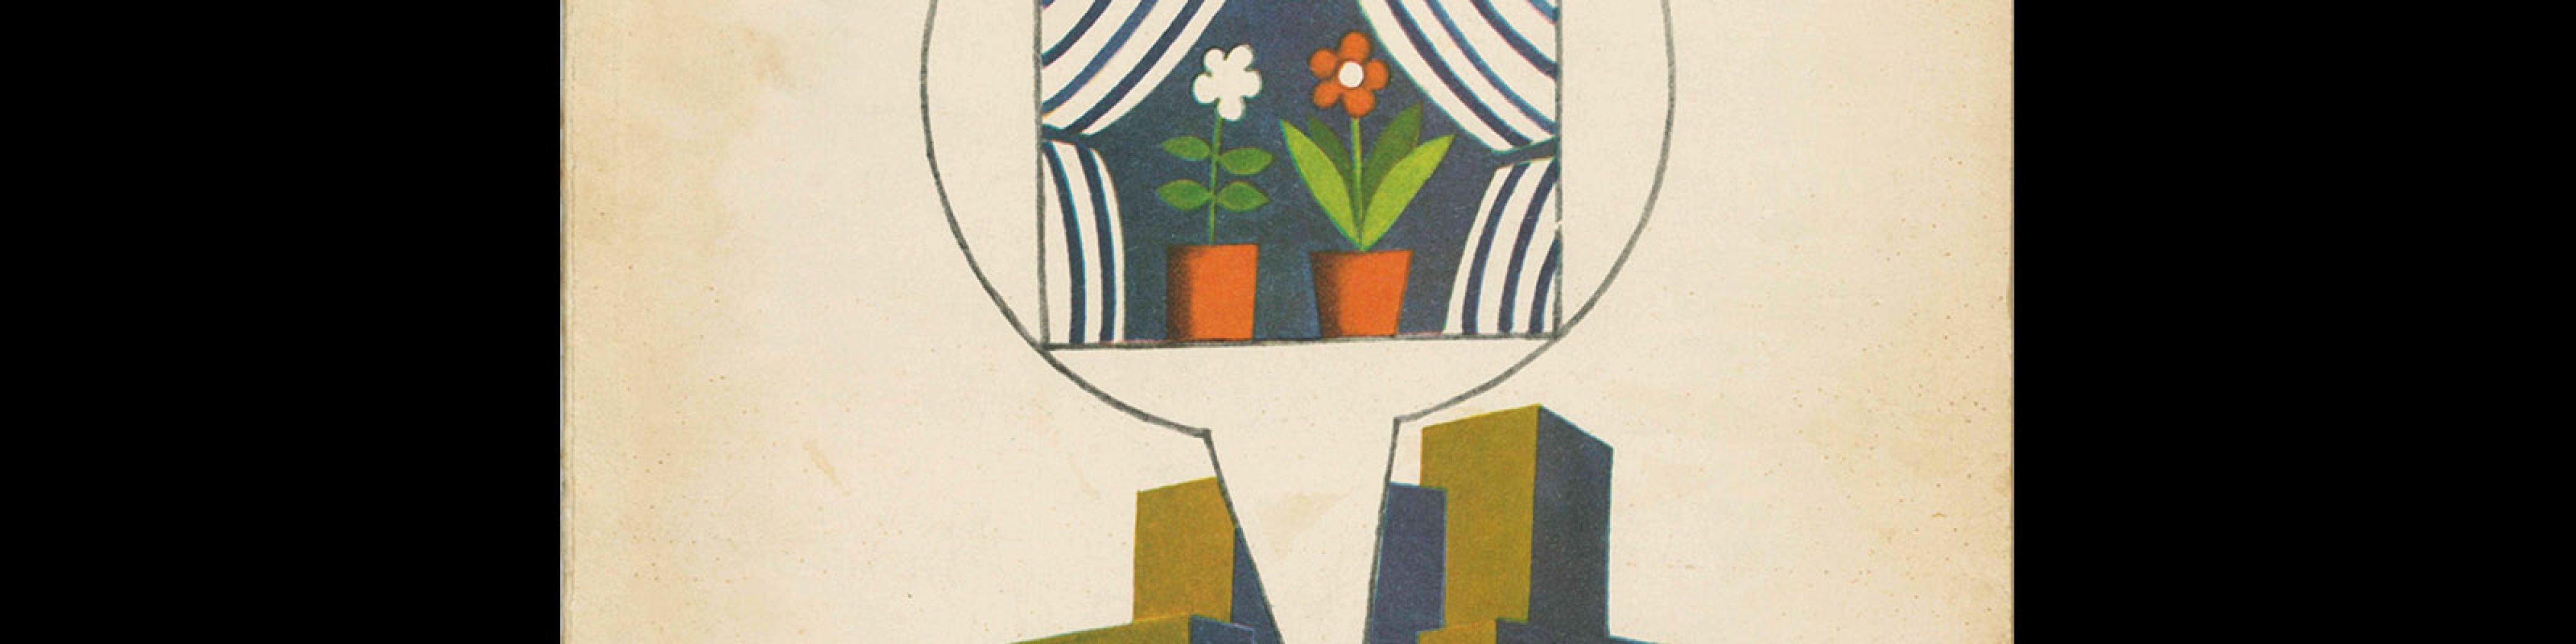 Domov, bytová kultura a technika v domácnosti - 2/1967